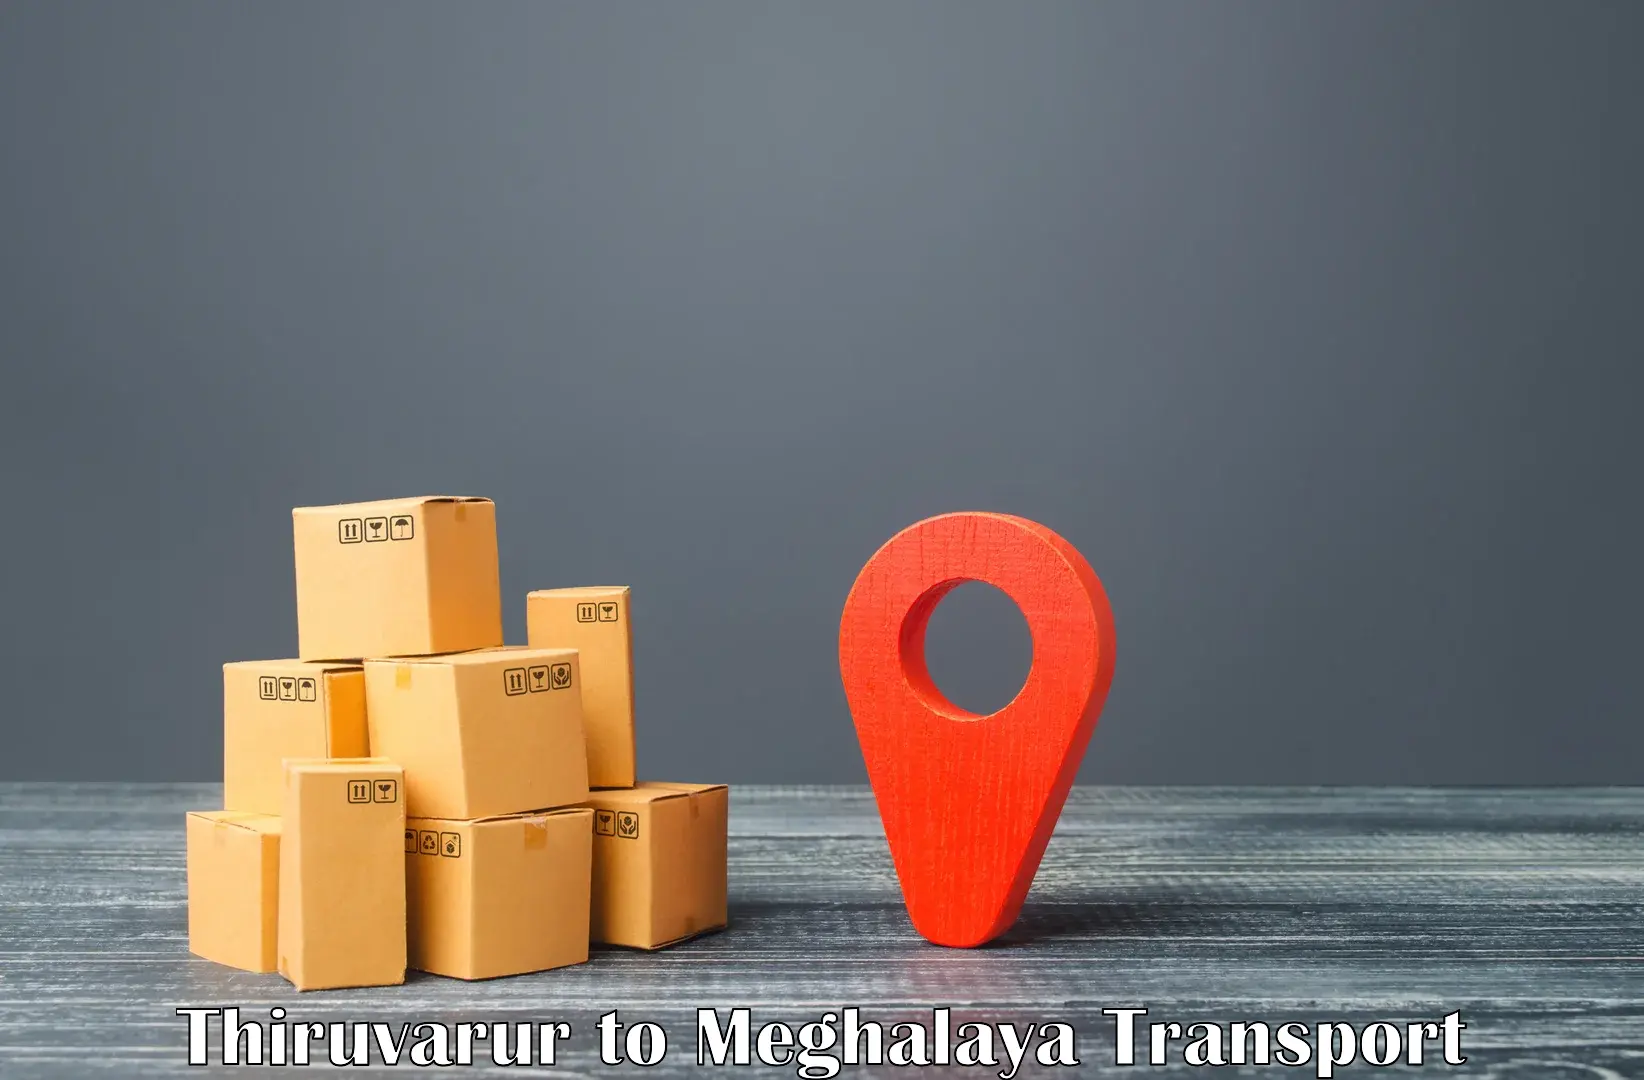 Two wheeler parcel service Thiruvarur to Meghalaya